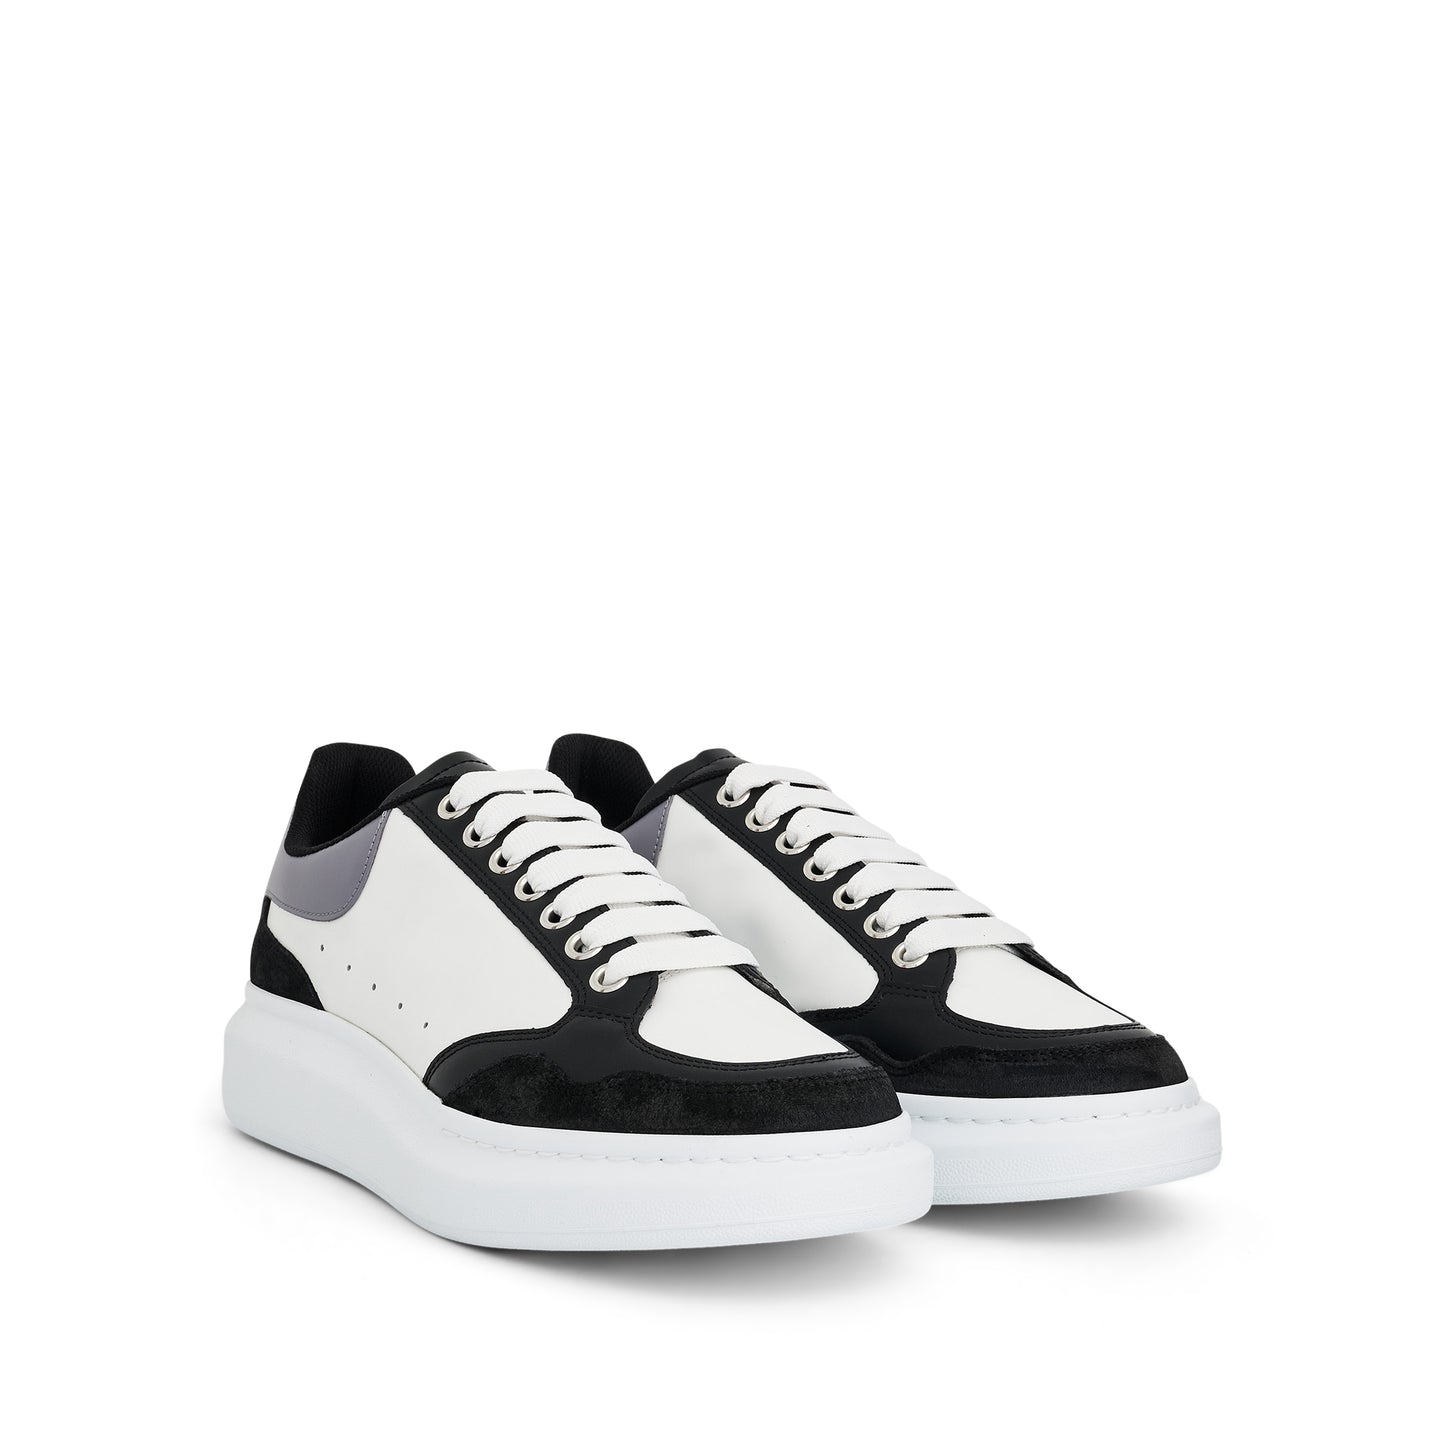 Larry Oversized Sensory Sneaker in Black/White